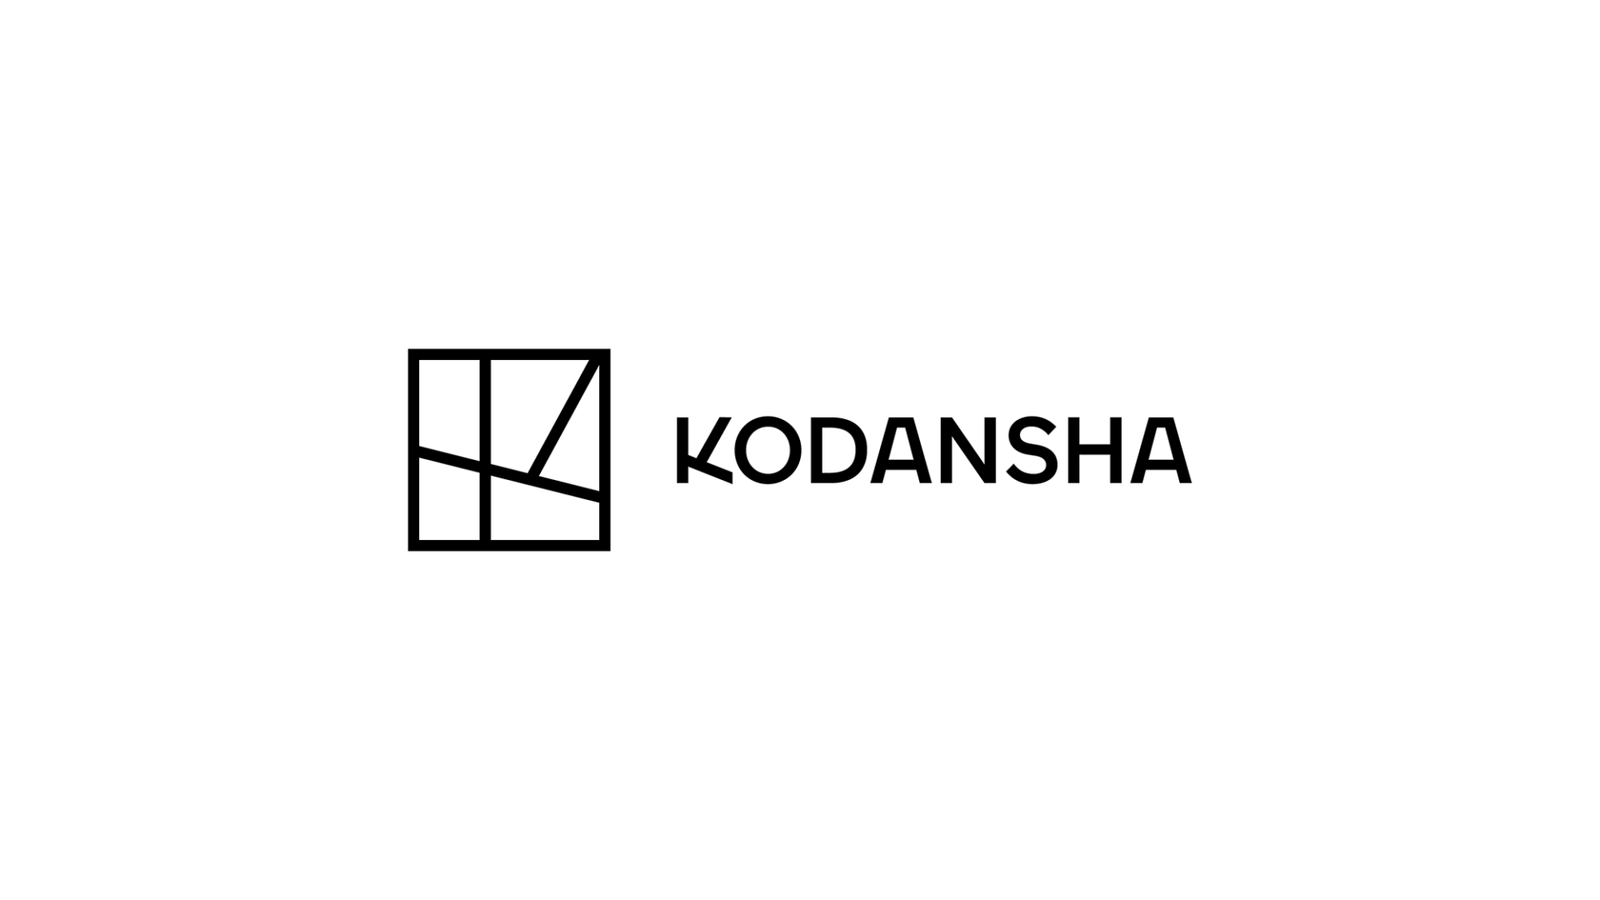 Kodansha logo featured